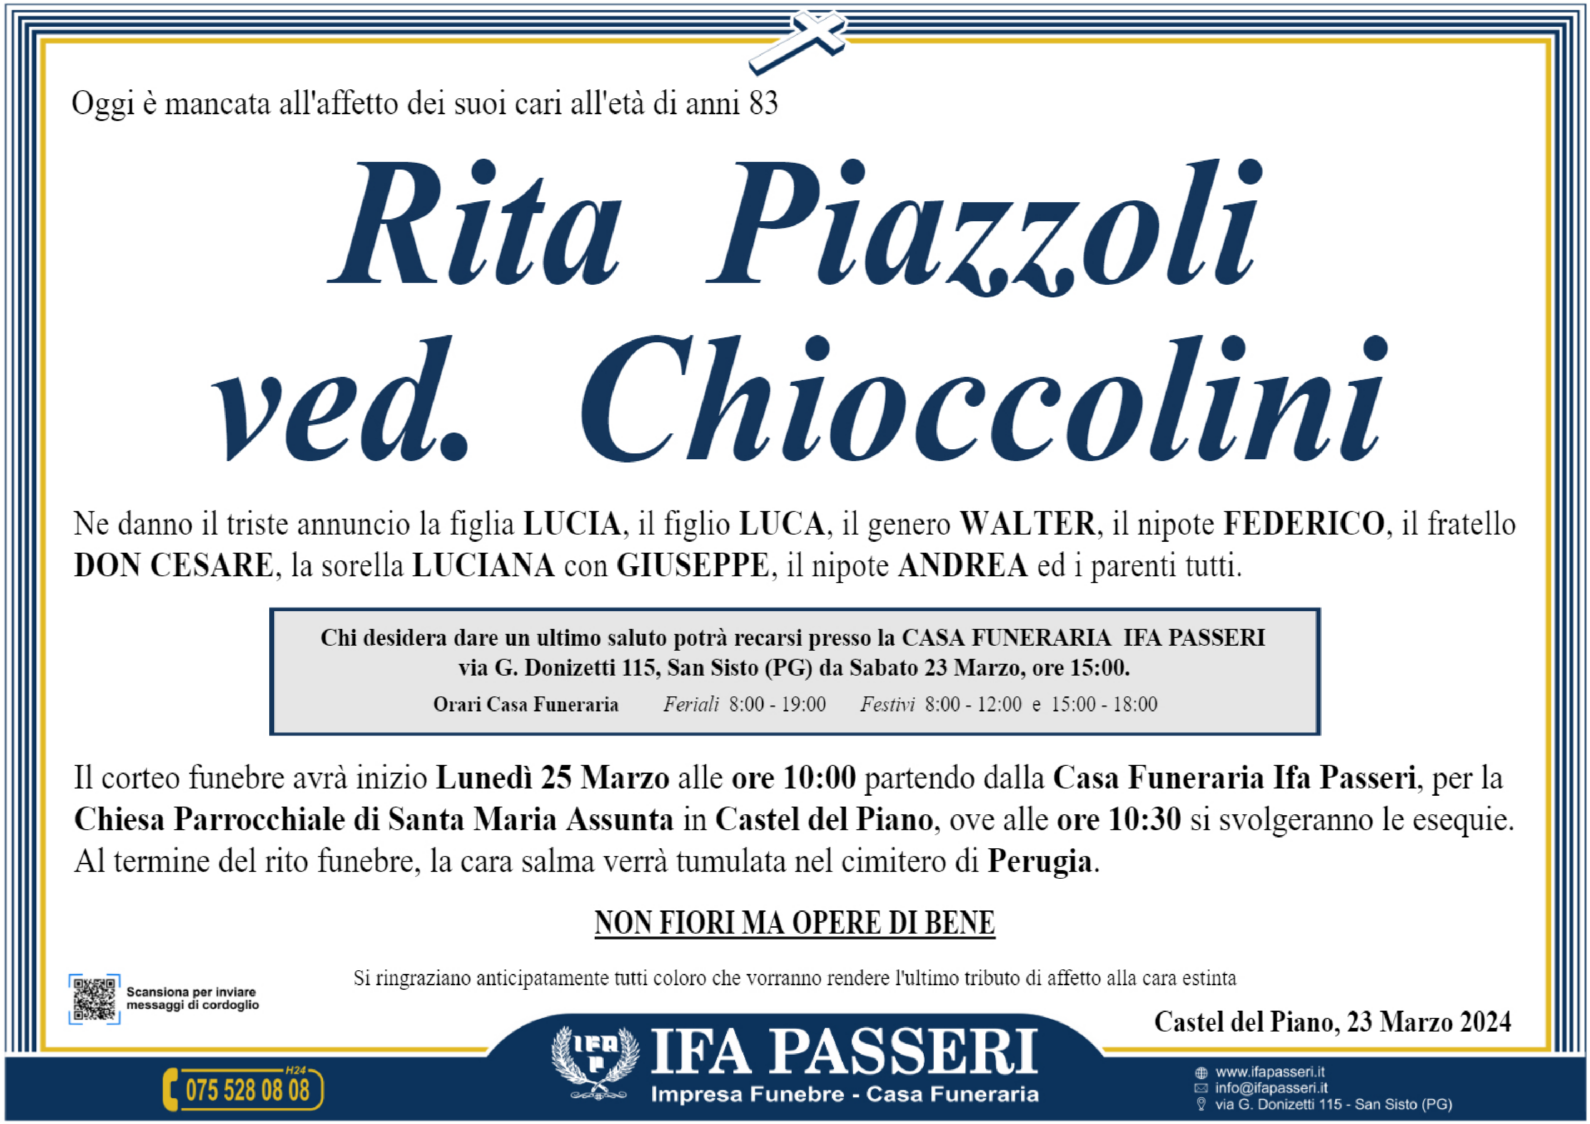 Rita Piazzoli ved. Chioccolini